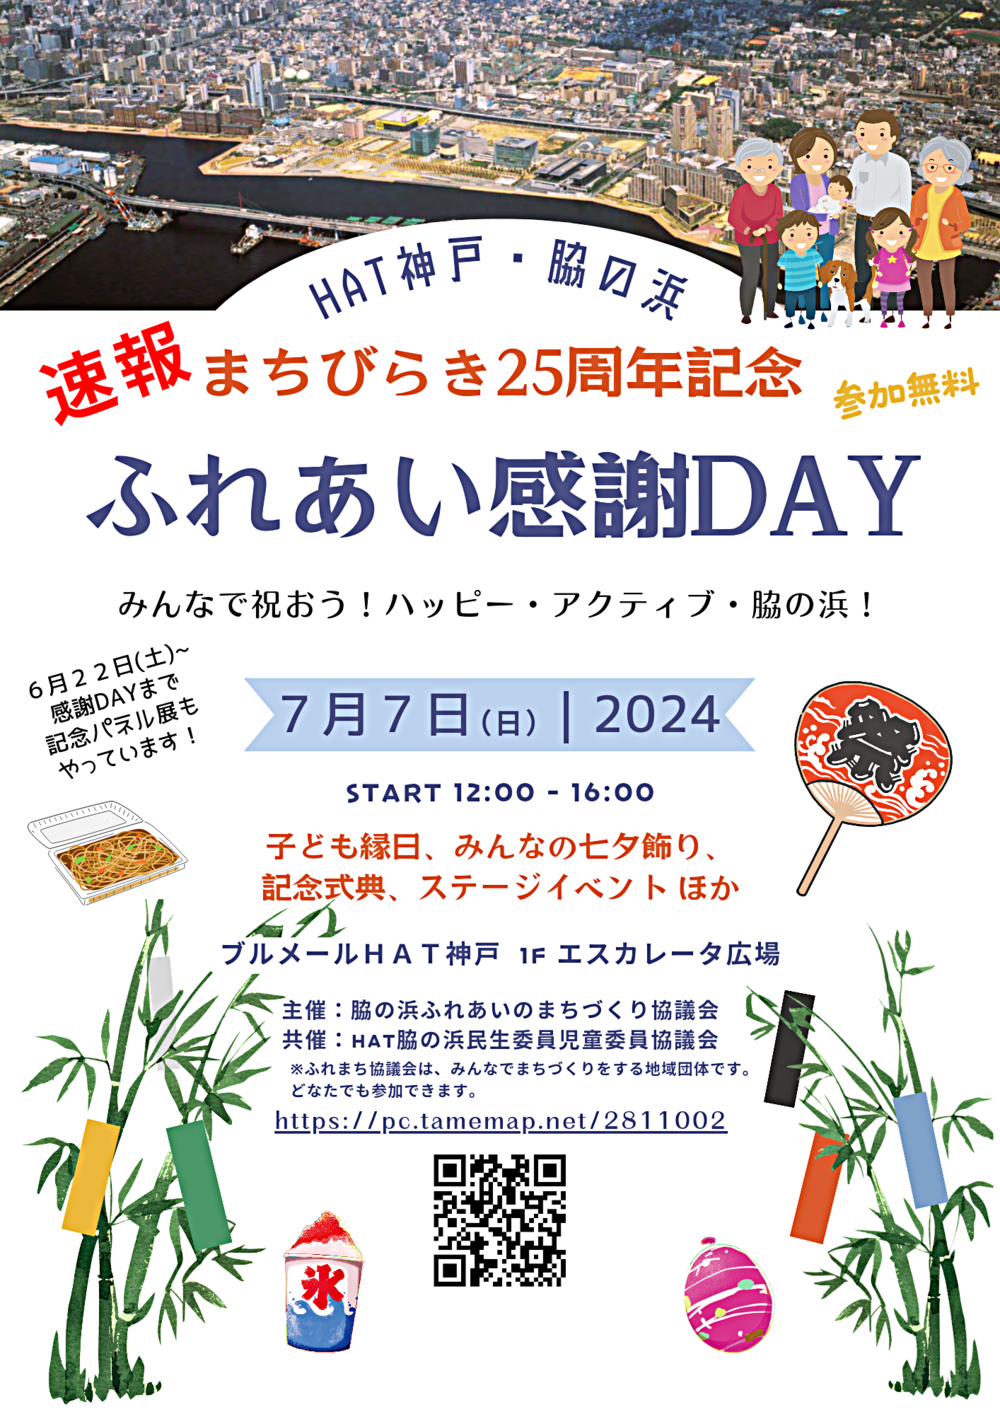 脇の浜 HAT神戸・脇の浜まちびらき 25周年 記念イベント